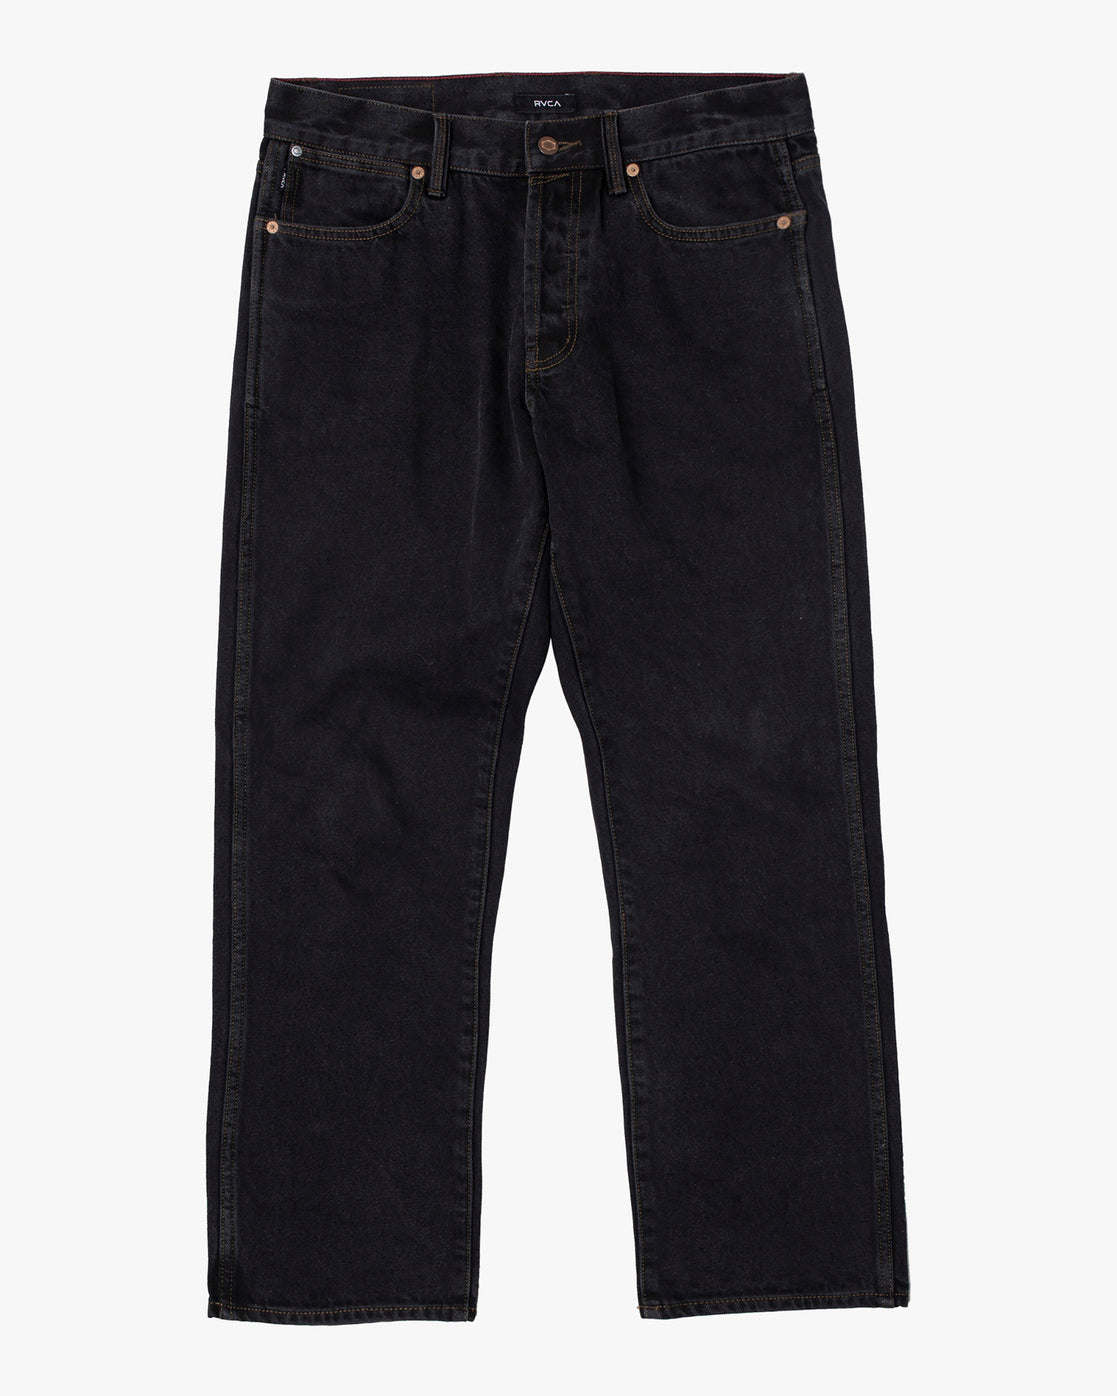 RVCA New Dawn Denim Jeans Black Rinse Men's Denim RVCA 